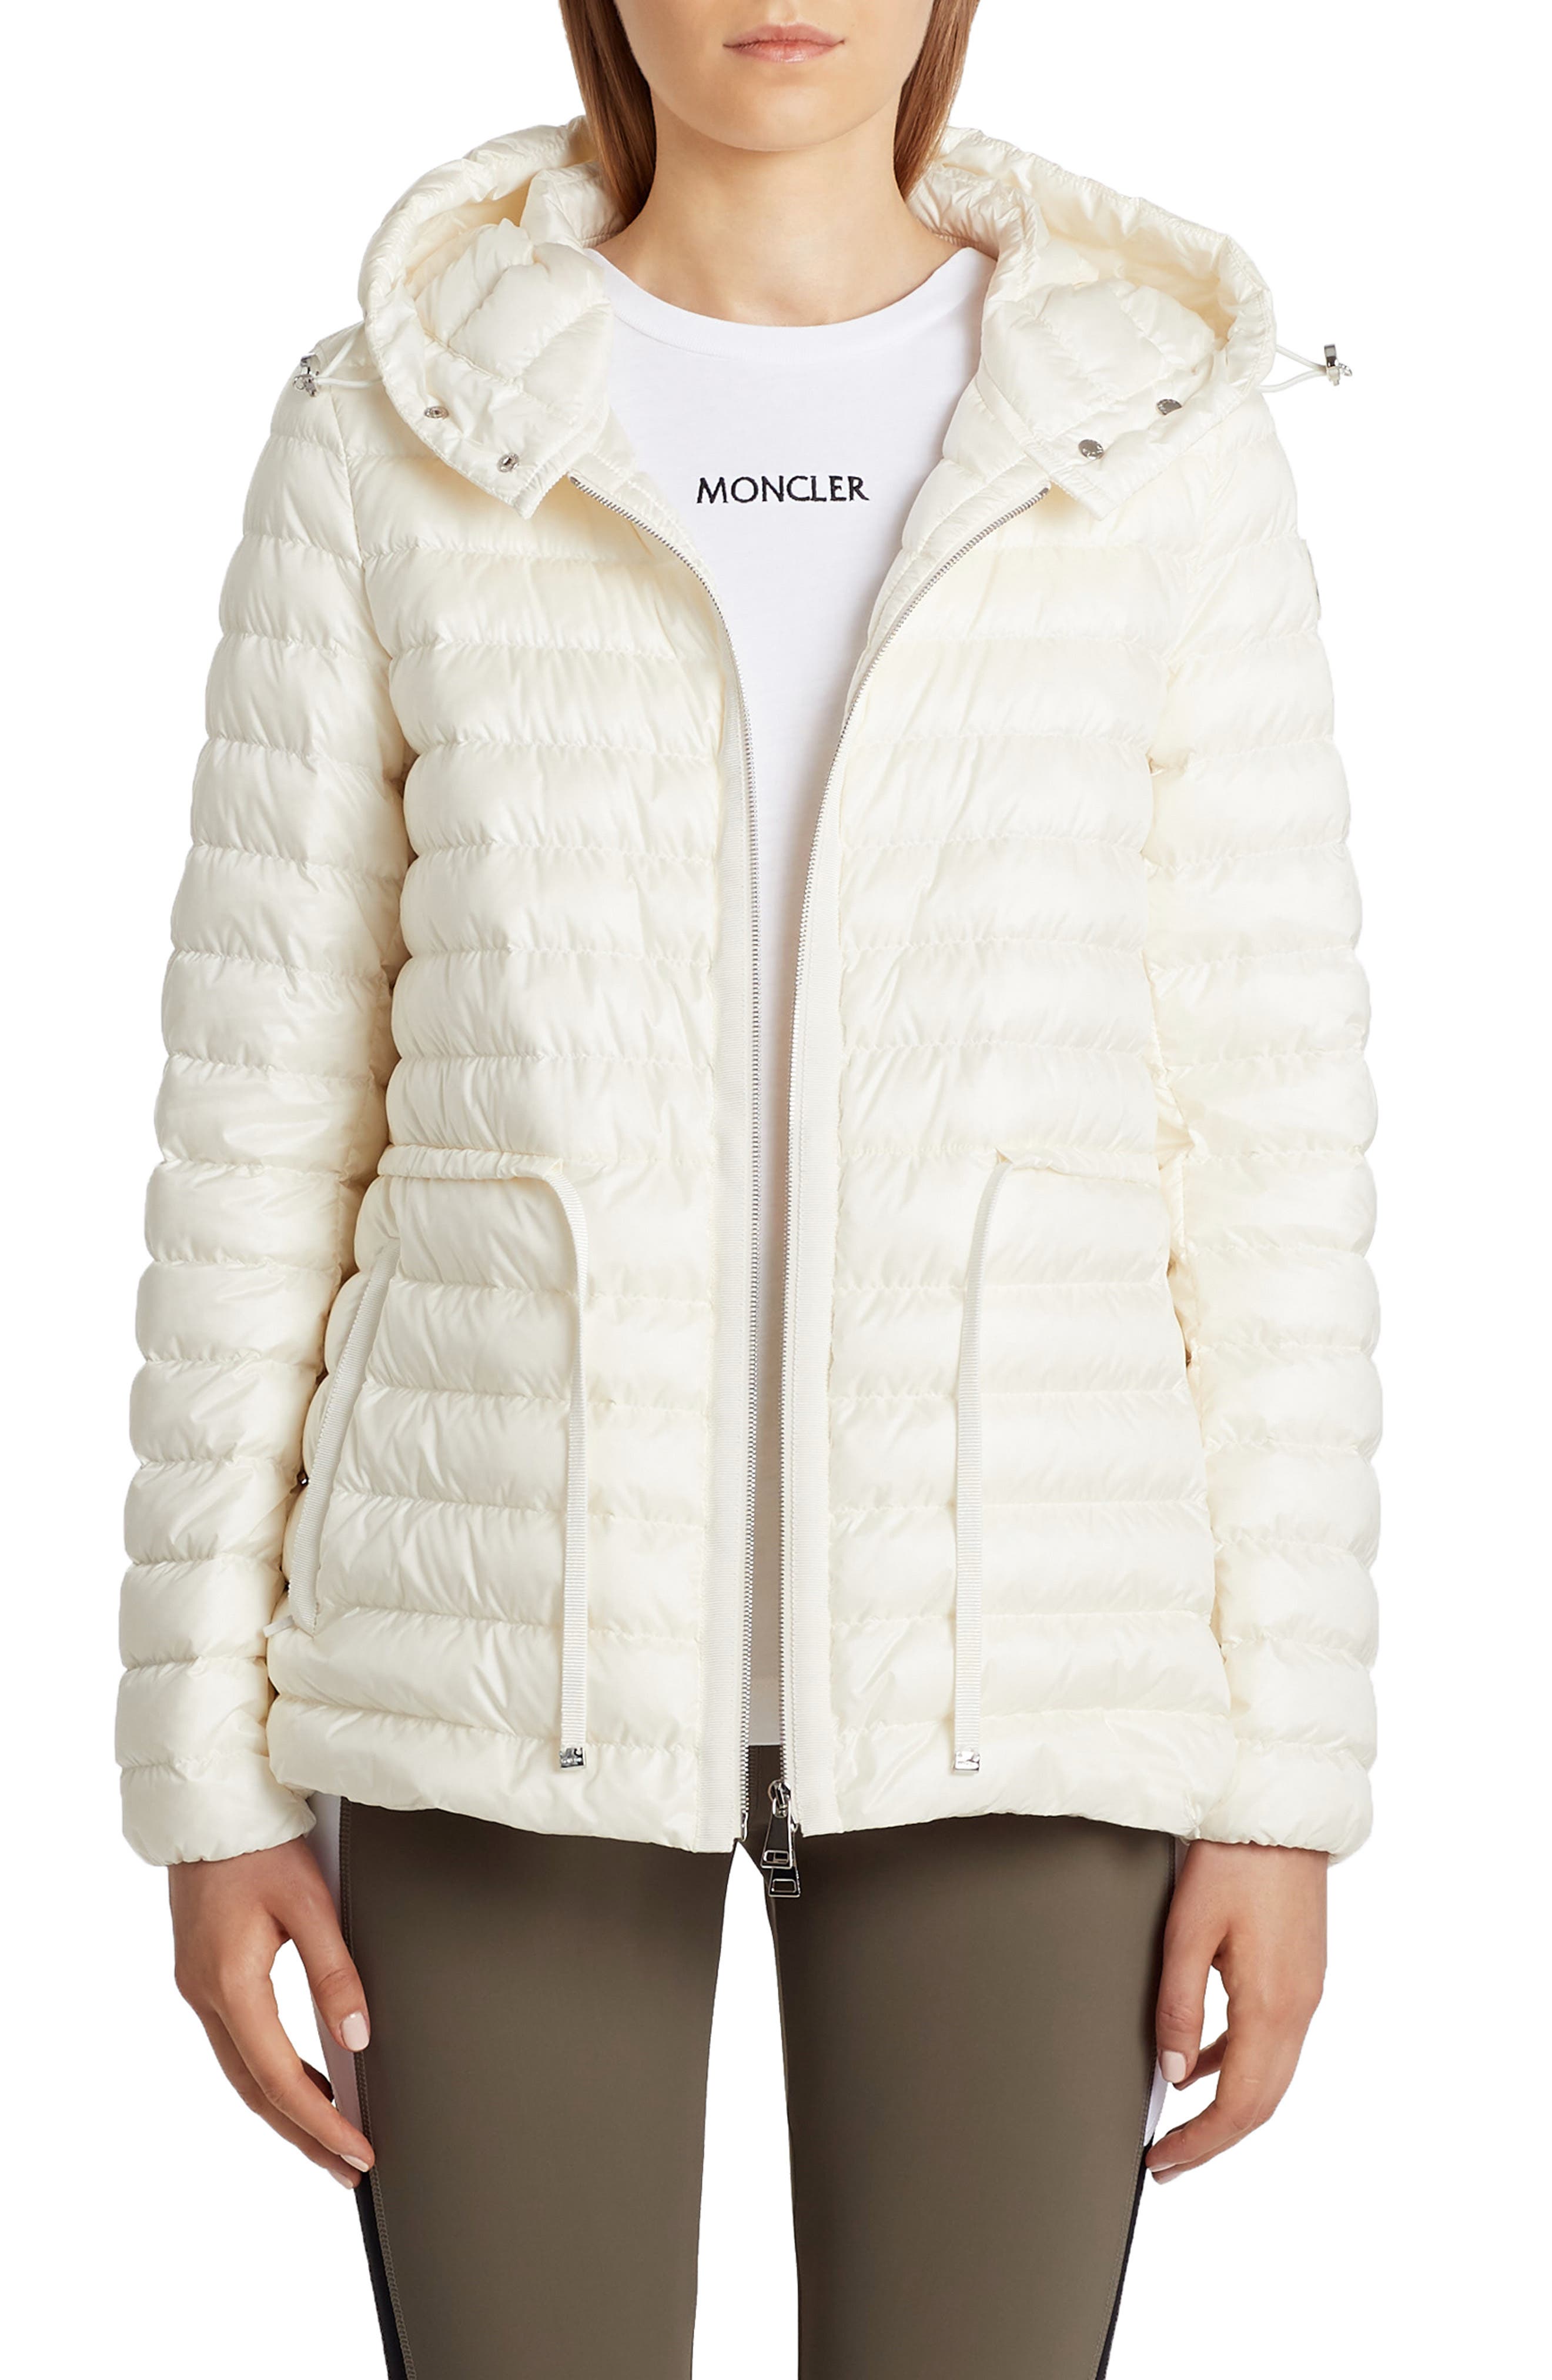 moncler womens lightweight jacket